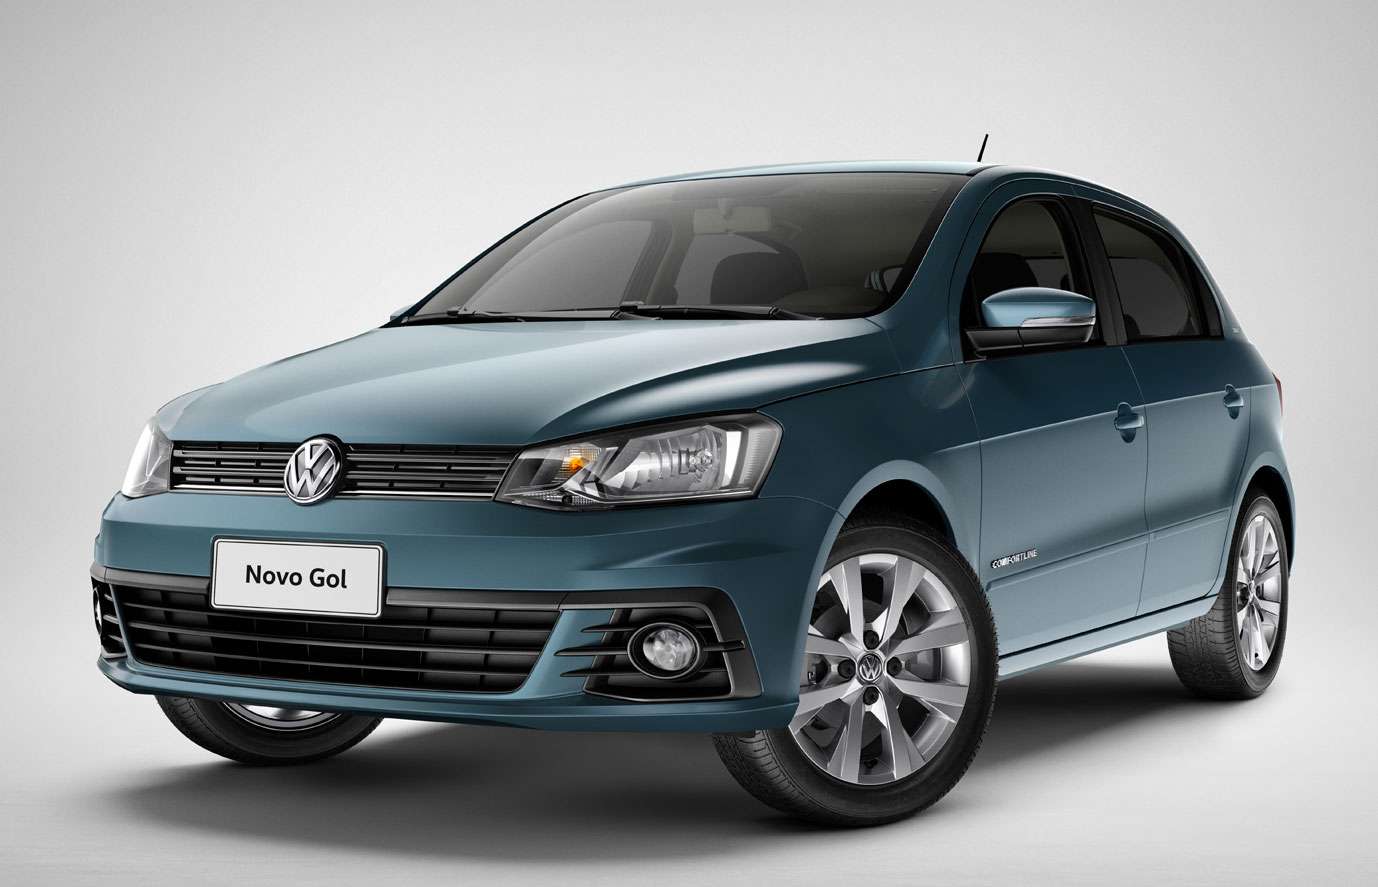 Volkswagen Gol G5 2011 Trend 1.0 - fotos, consumo, preço